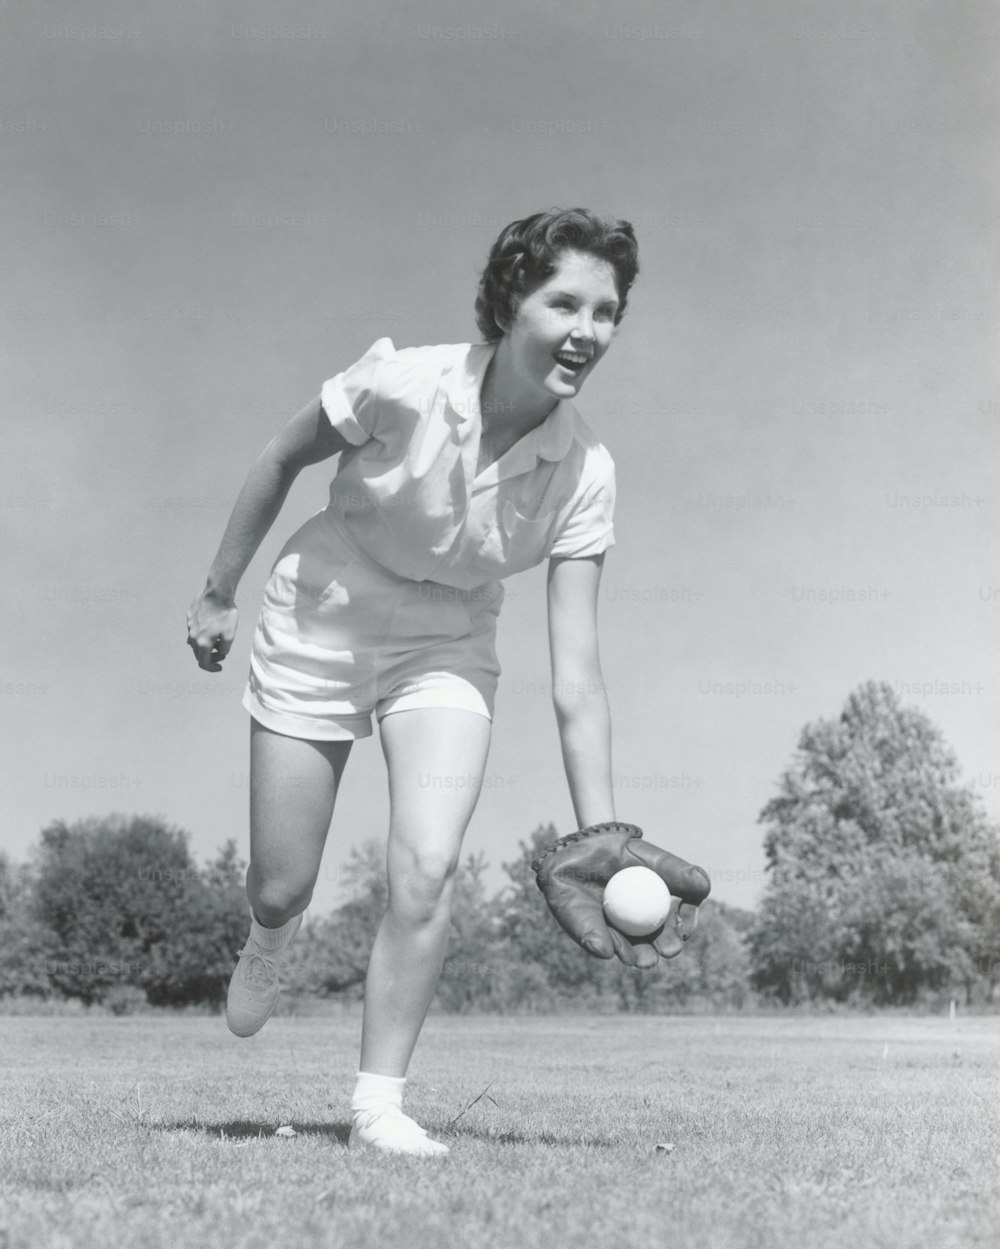 미국 - 1950년대경: 글러브를 끼고 야구를 하는 젊은 여성.